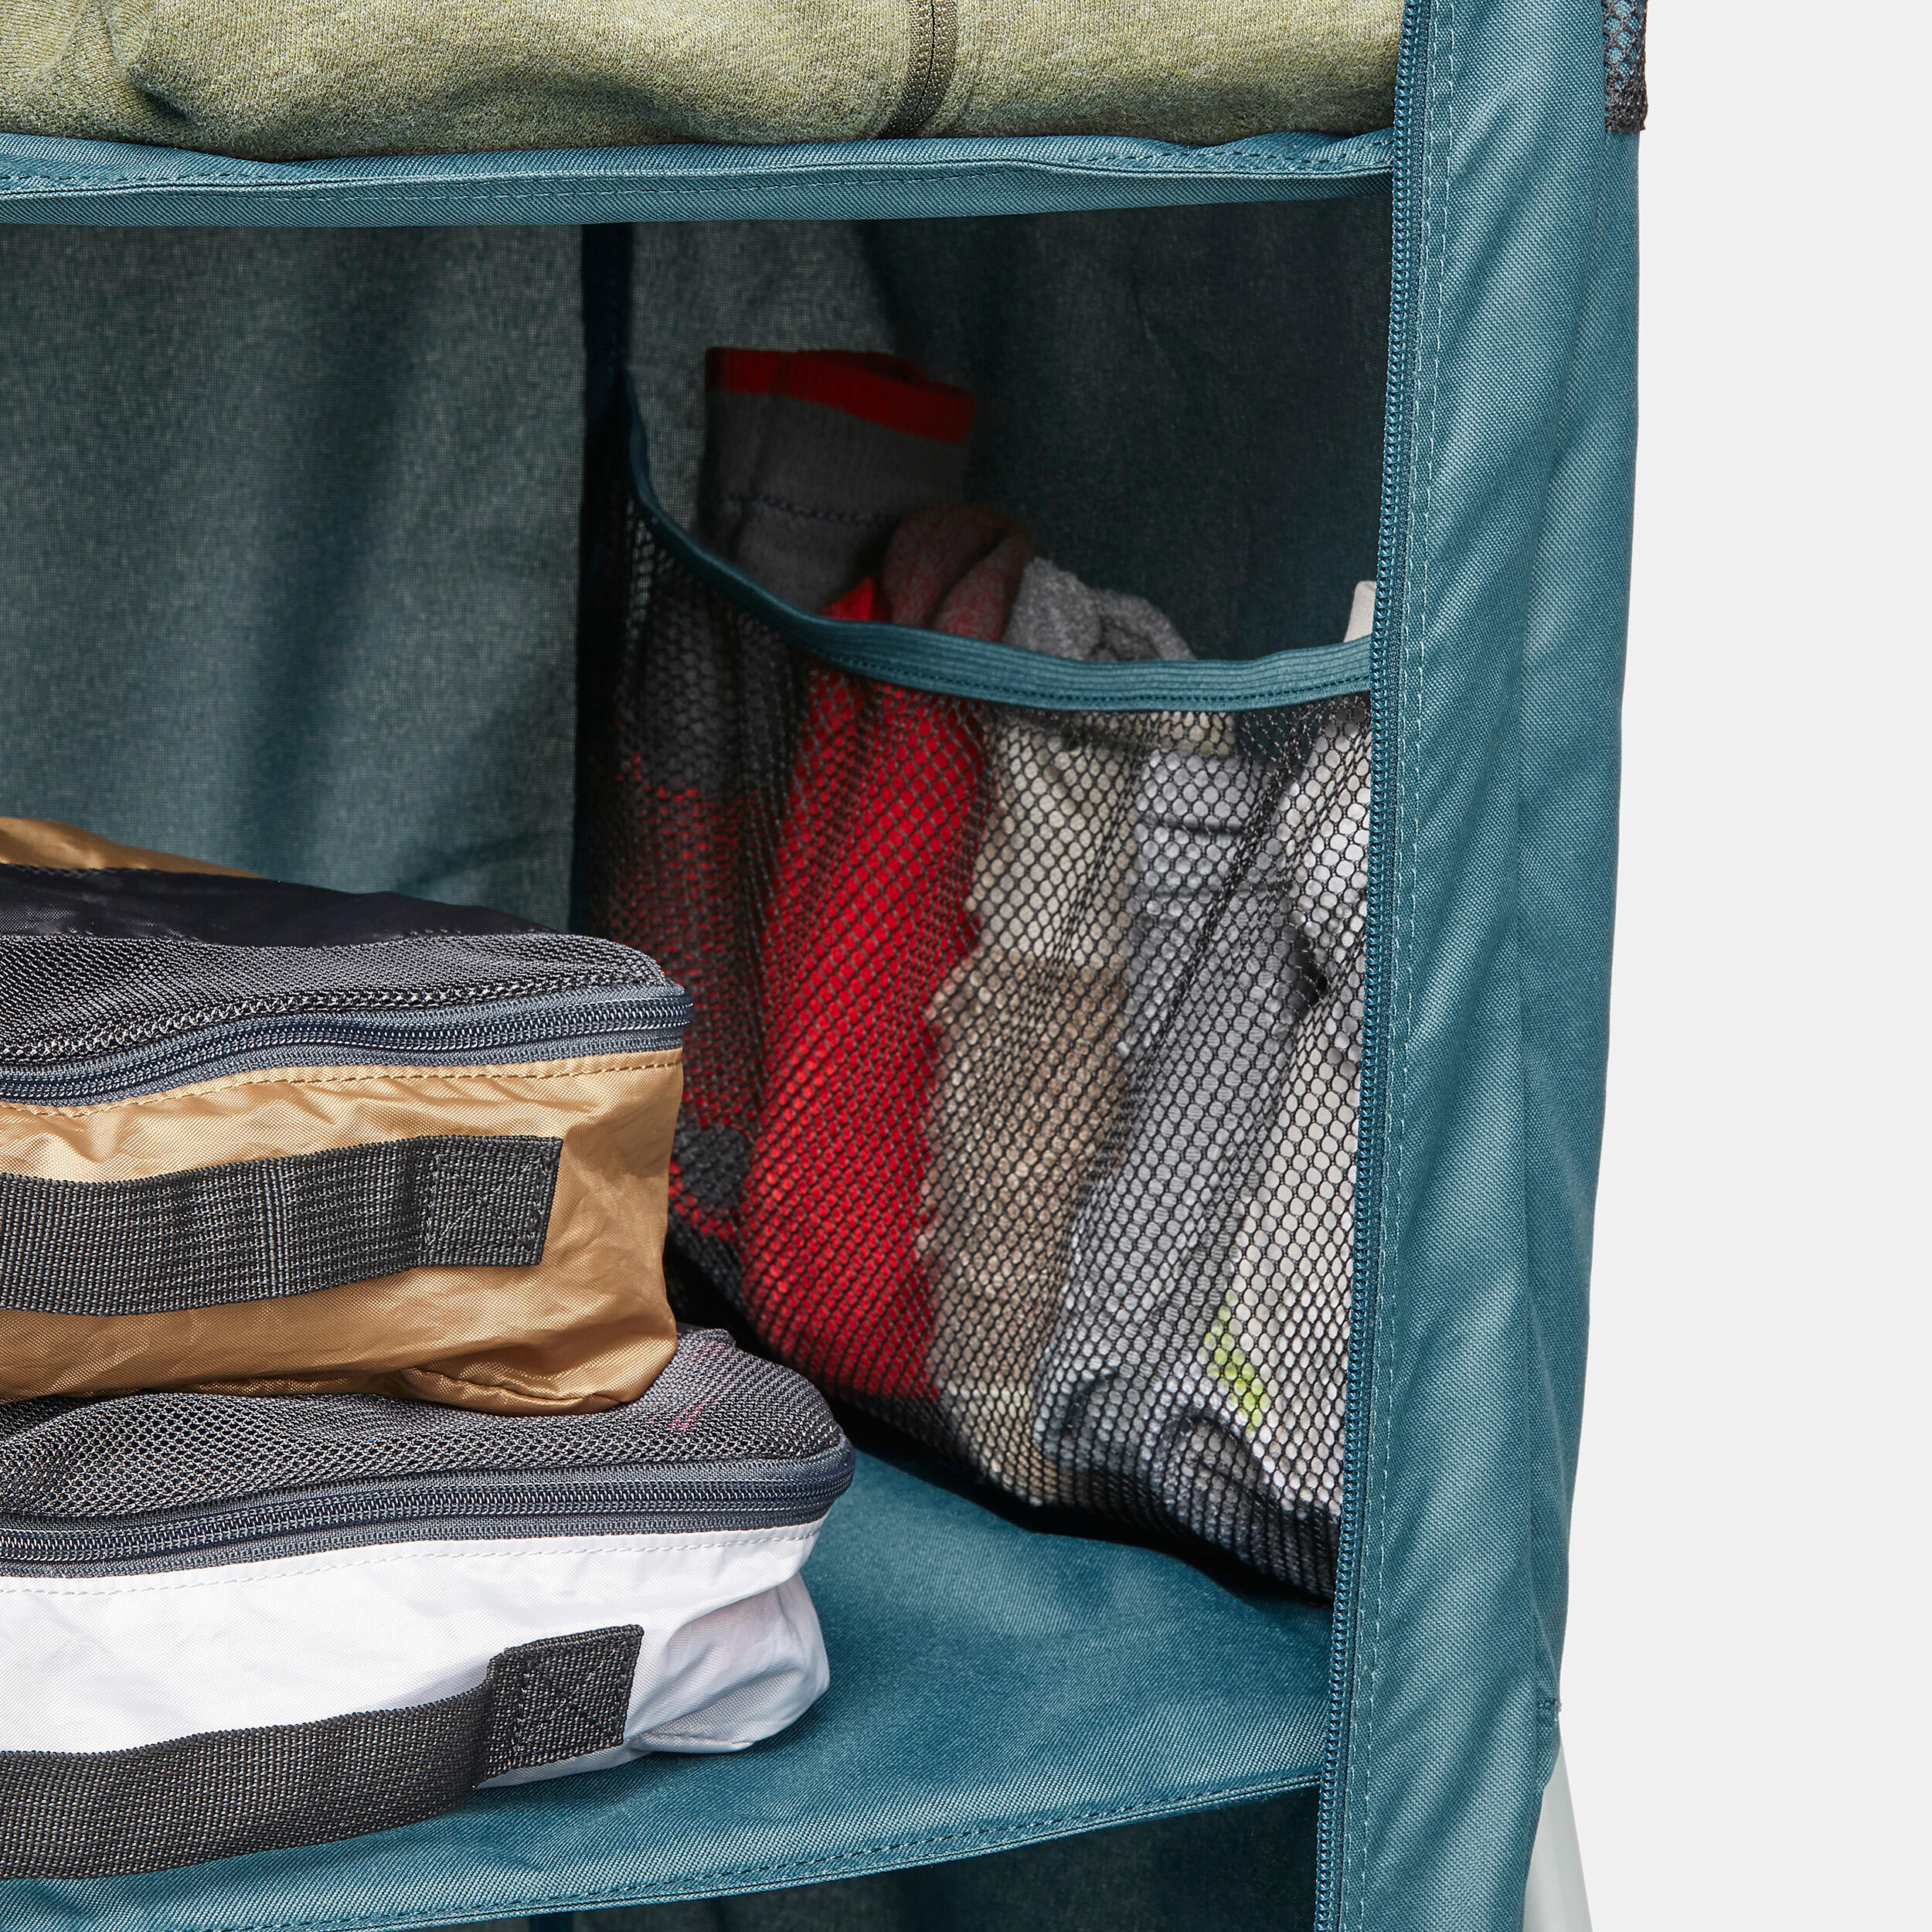 Folding and compact camping wardrobe - Basic 4/6